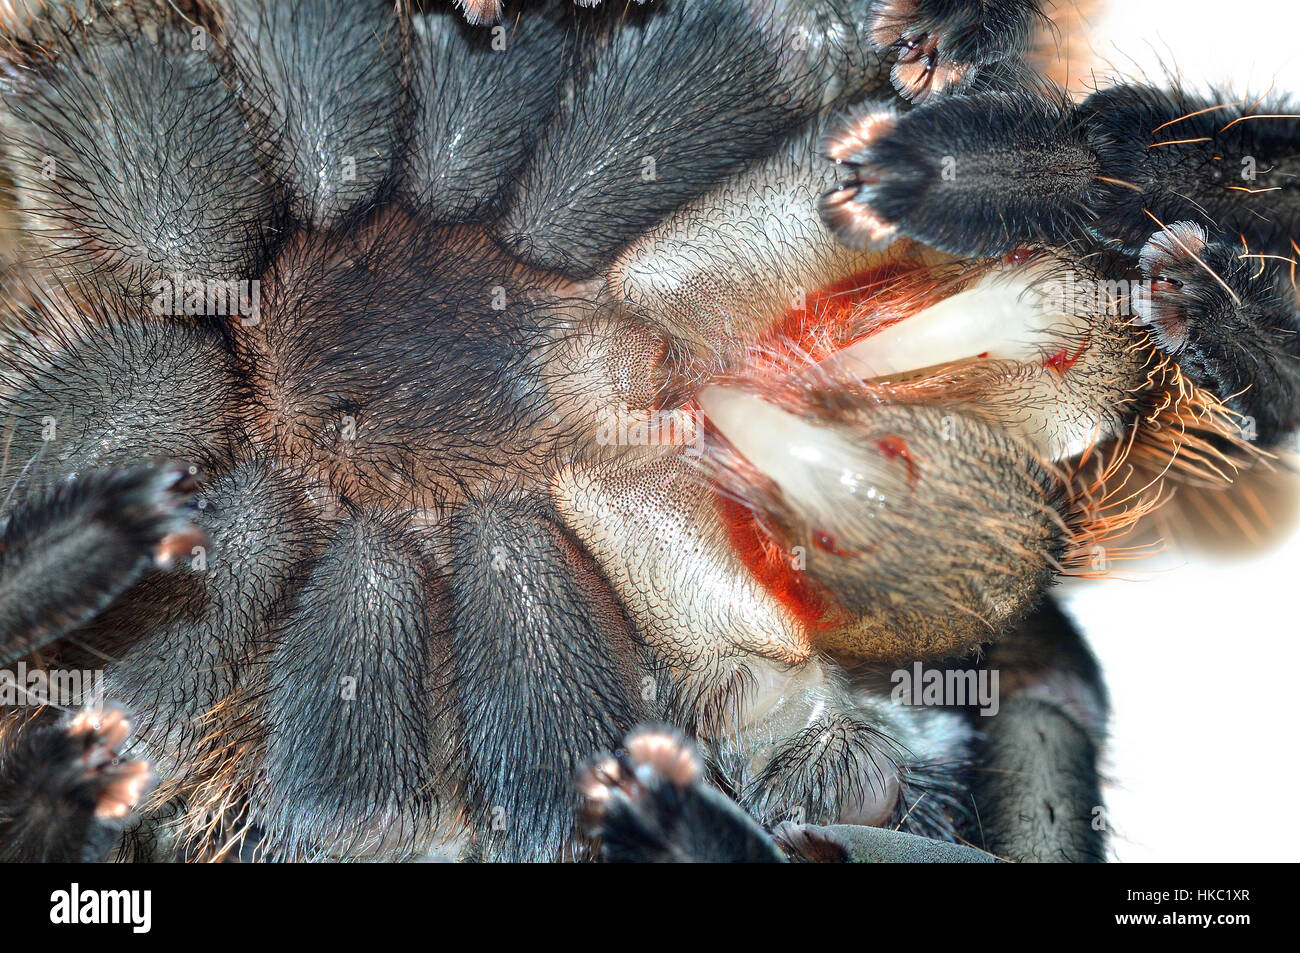 Cabello de rizo hondureño (Tliltocatl albopilosus) Tarántula mostrando sus flangs suaves después de emerger de su exoesqueleto. Foto de stock